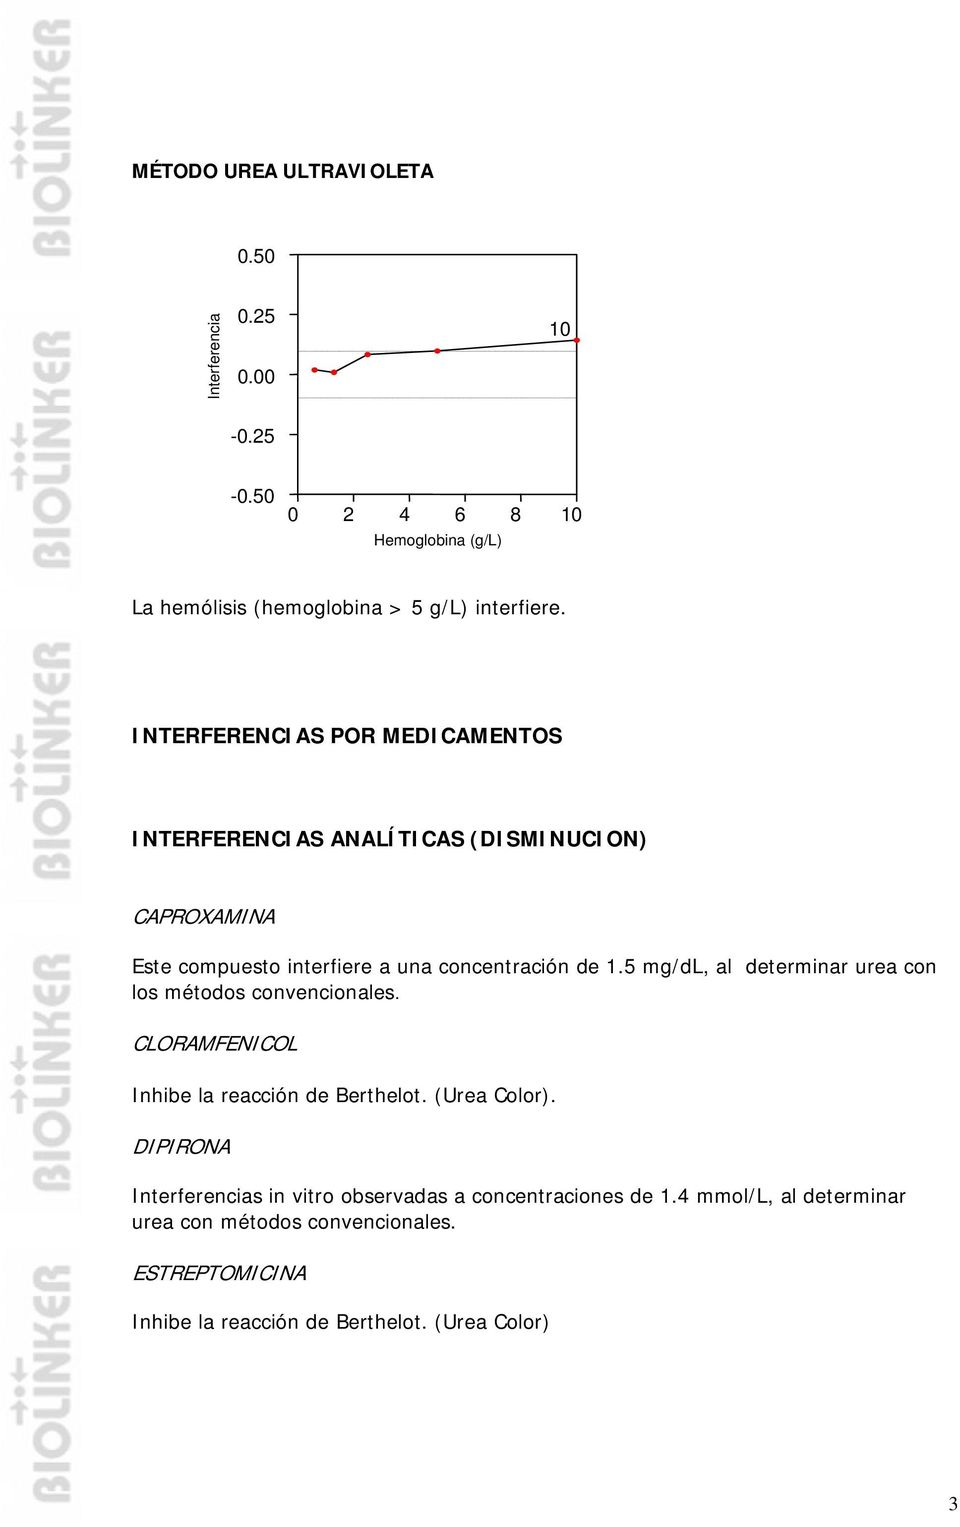 5 mg/dl, al determinar urea con los métodos convencionales. CLORAMFENICOL Inhibe la reacción de Berthelot. (Urea Color).